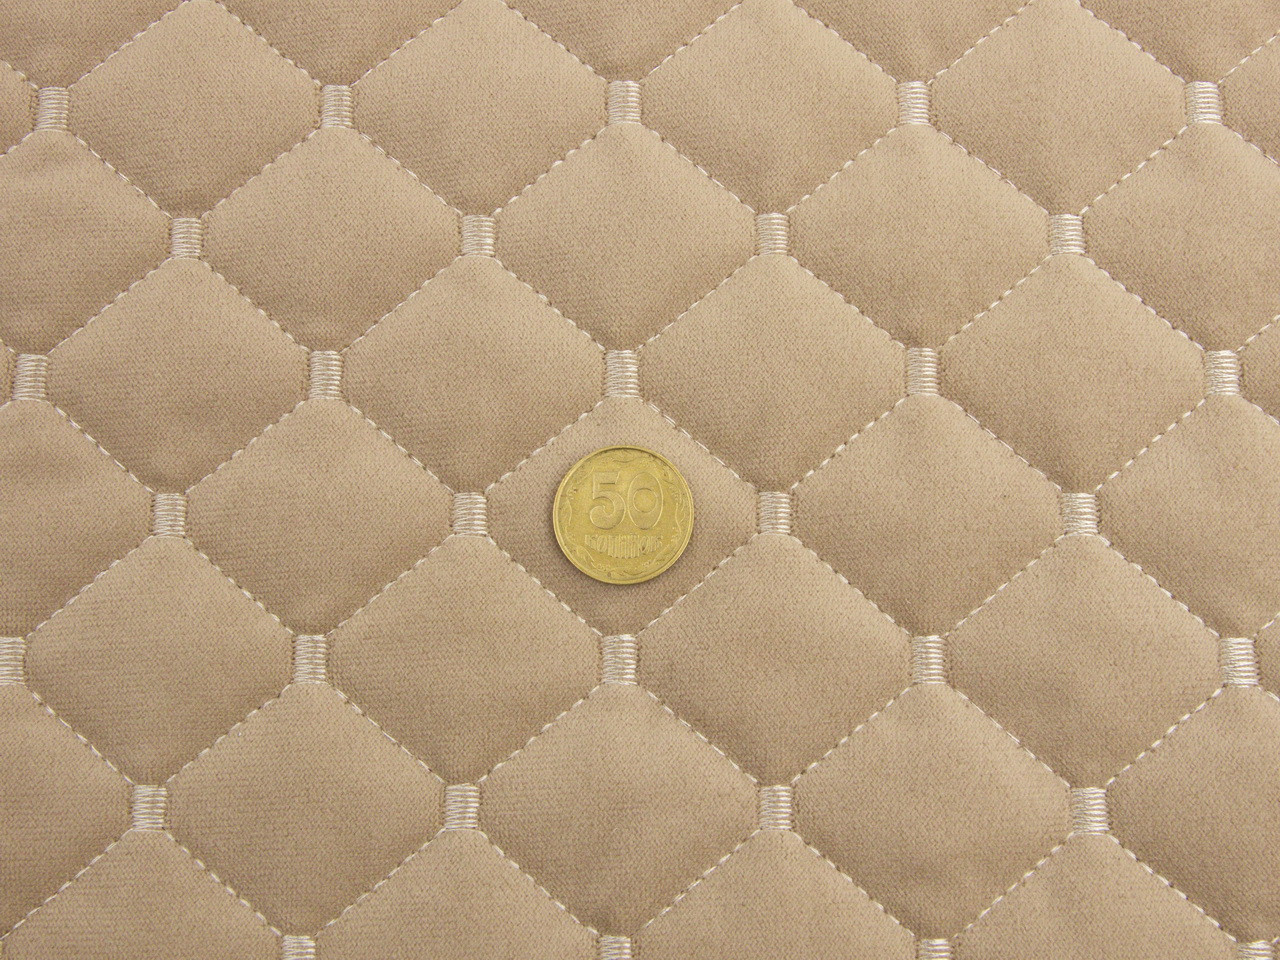 Велюр стёганый бежевой «Ромб» (прошитый светло-бежевой нитью) синтепон и флизелин, ширина 1,35м детальная фотка